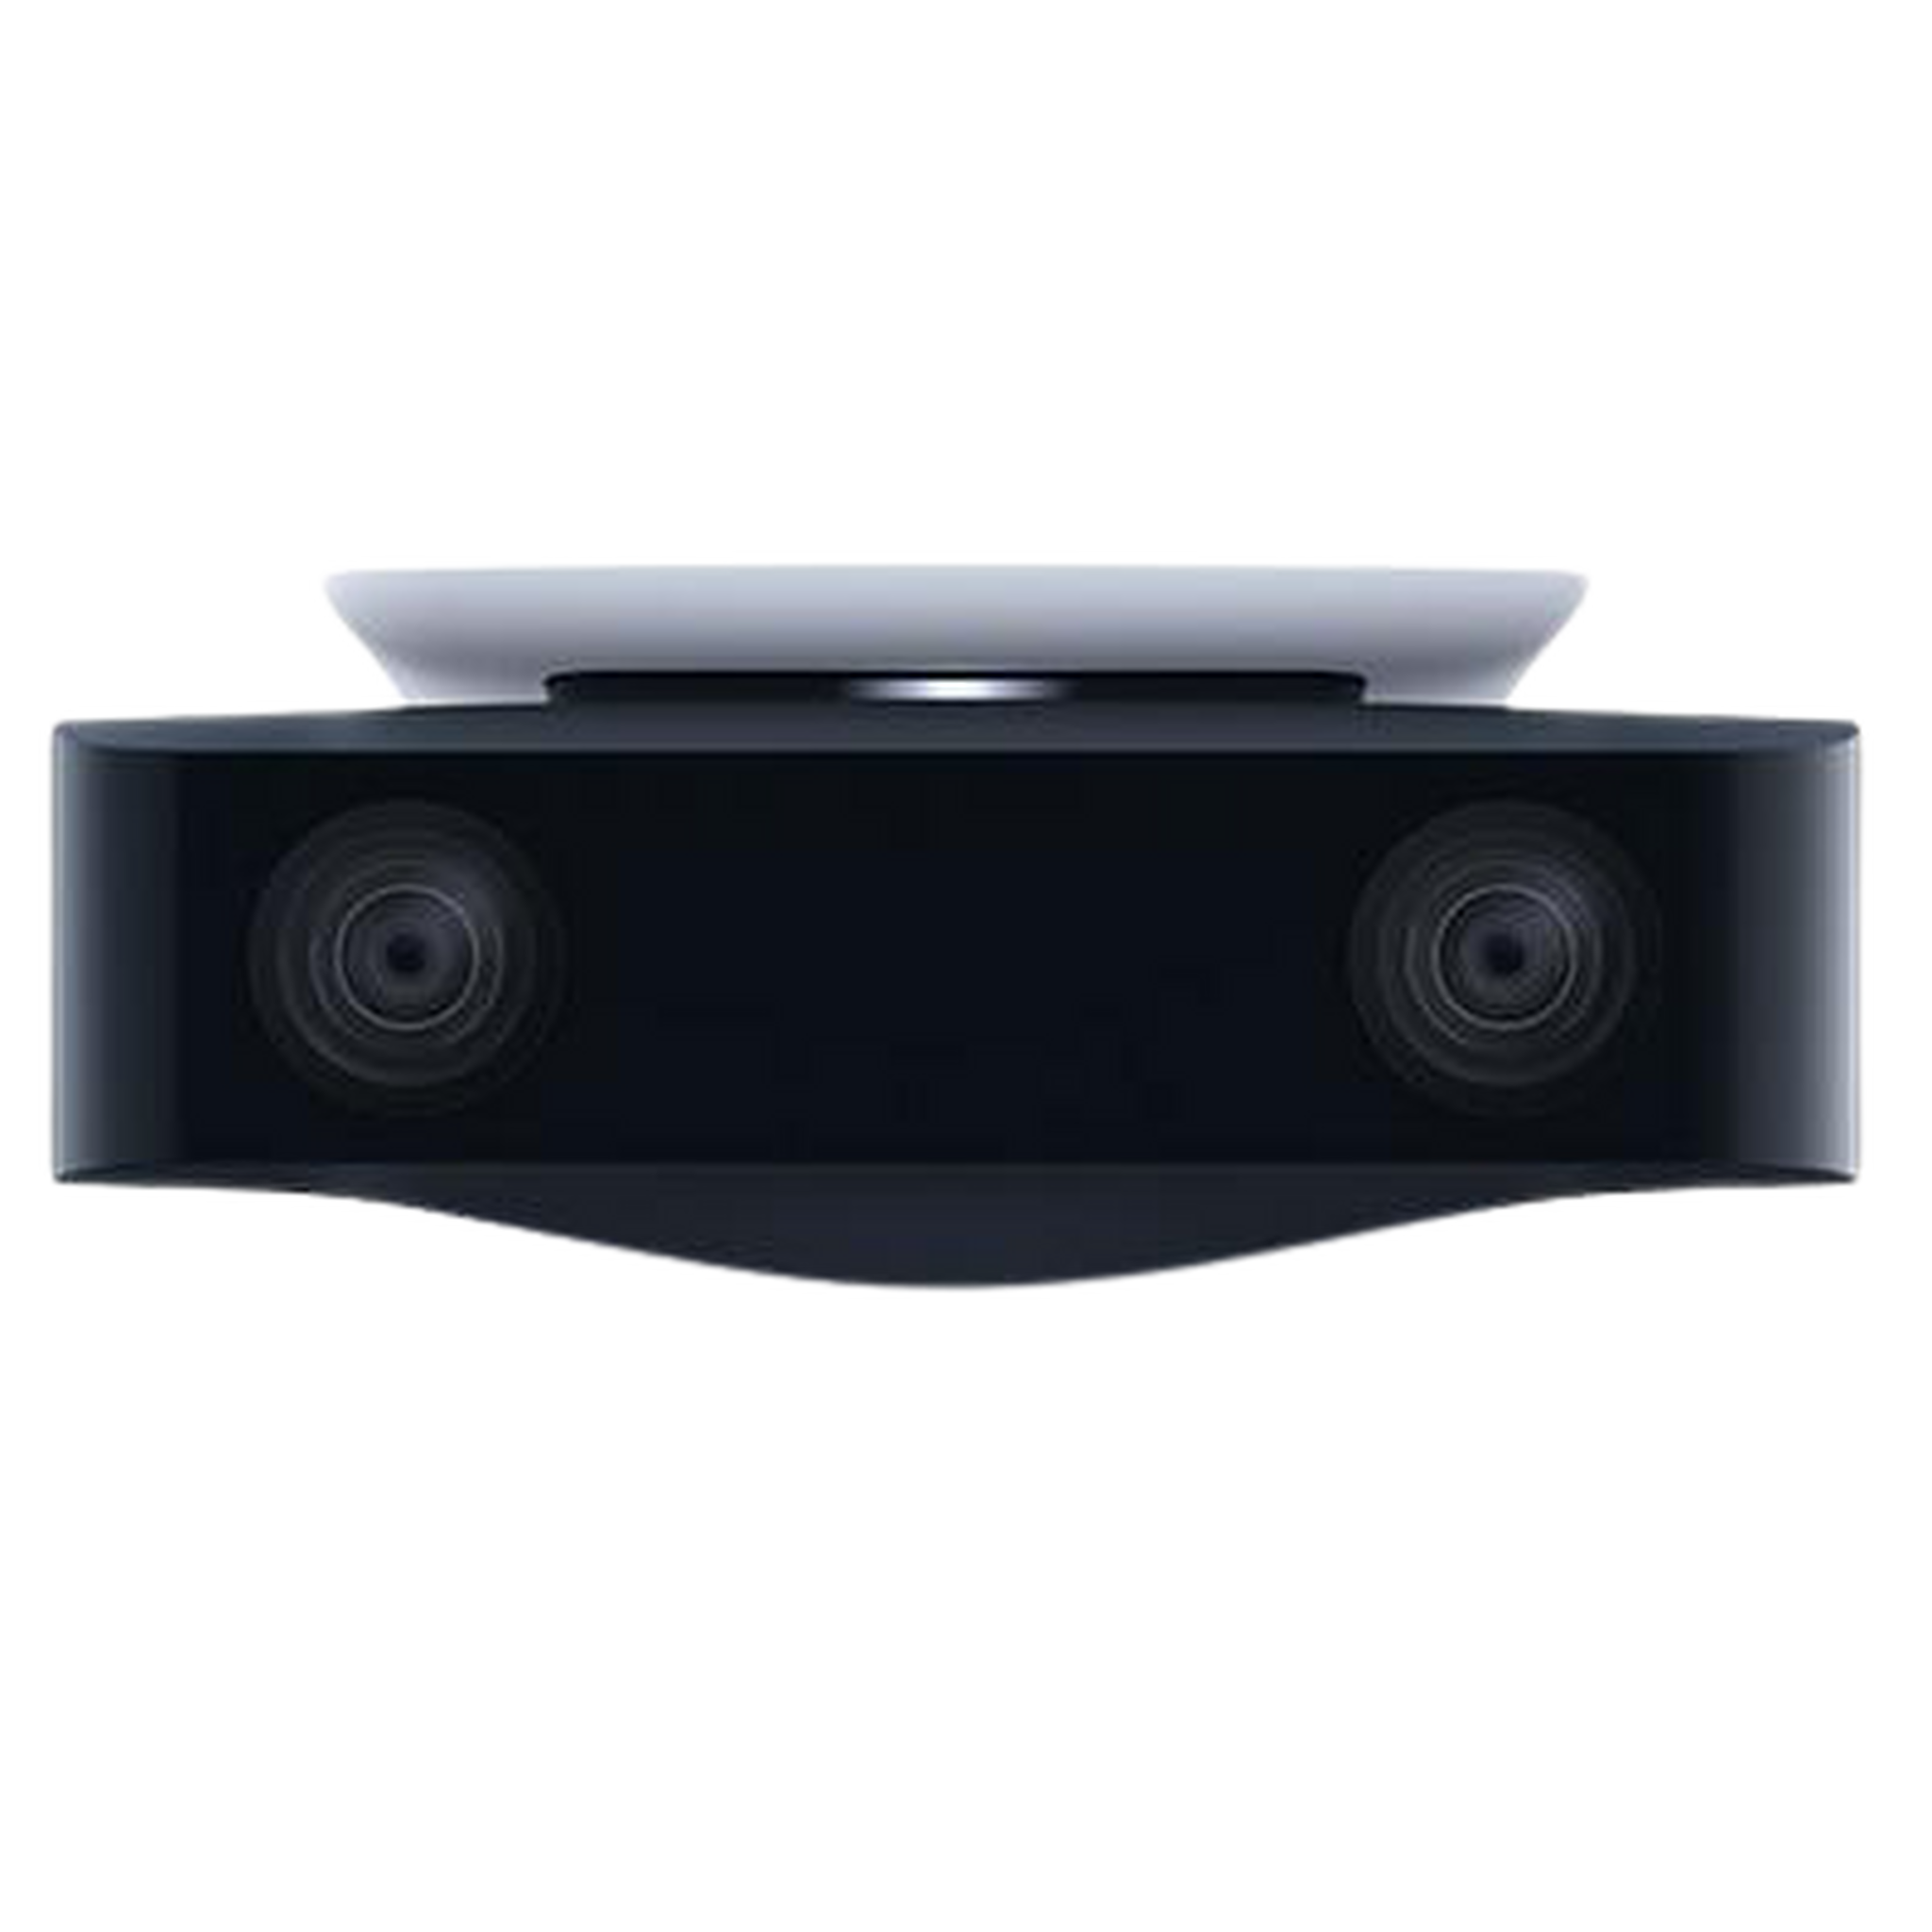 جهاز سوني بلايستيشن 5 إصدار ديجيتال + قسيمة للعبة هورايزن فوربيدن ويست + كاميرا كاملة الوضوح + محطة شحن دول سينس لوحدة التحكم